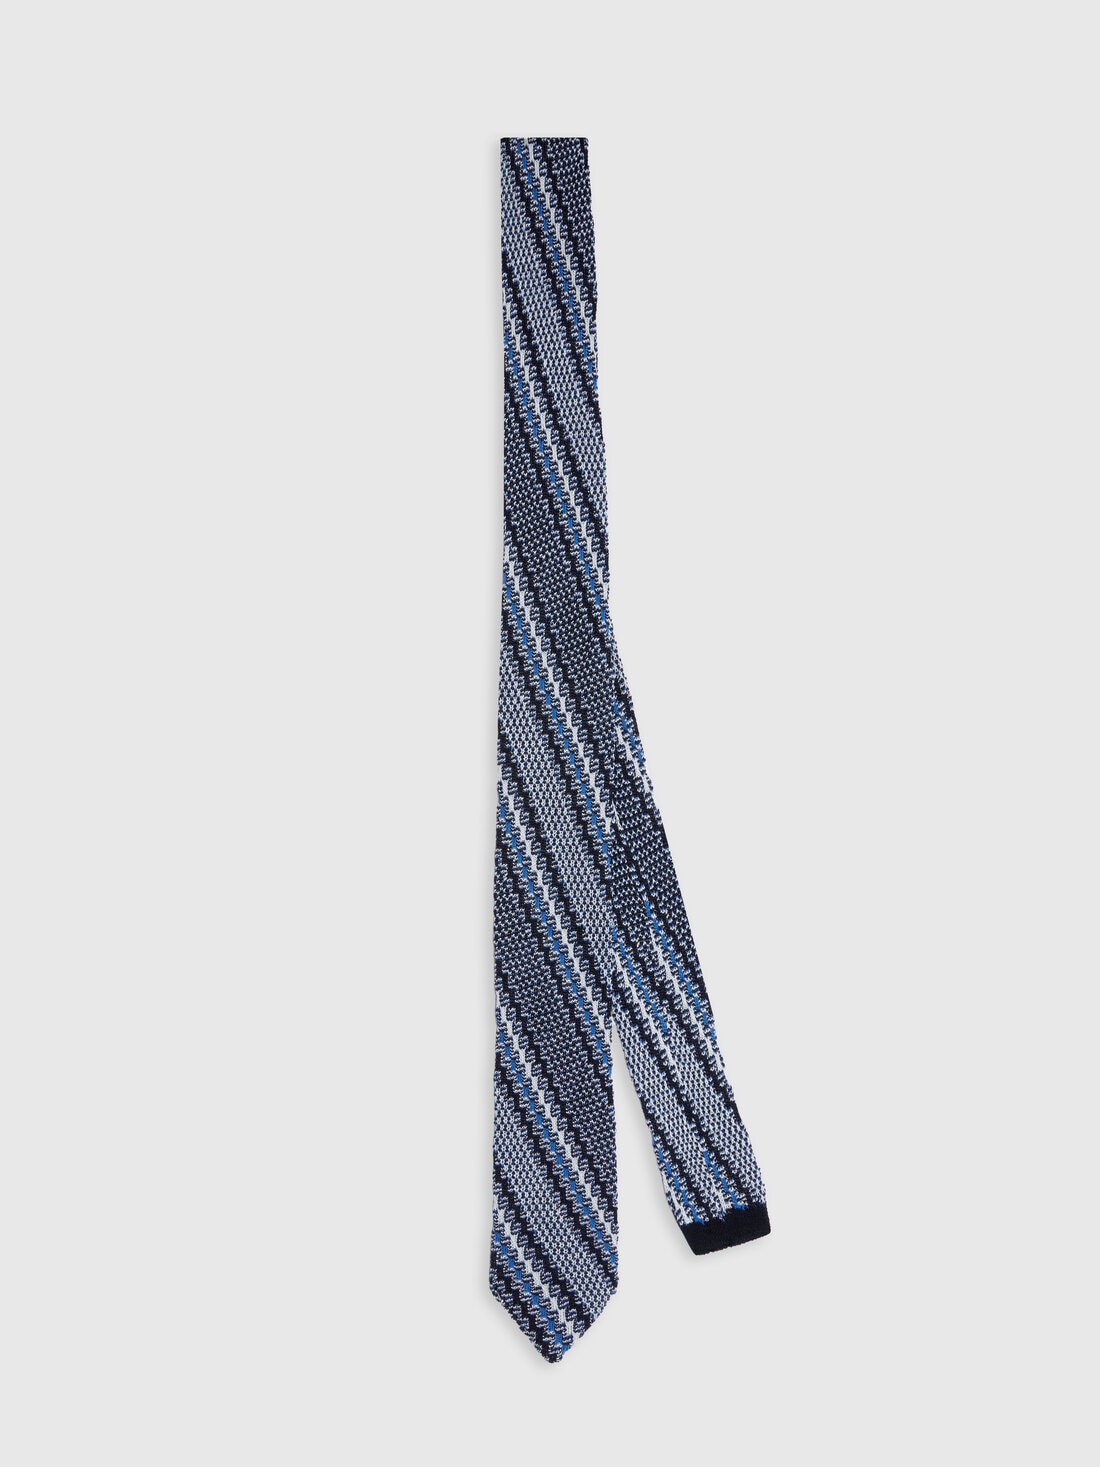 Cravatta in cotone e lino con ricami, Multicolore  - 8053147141879 - 0